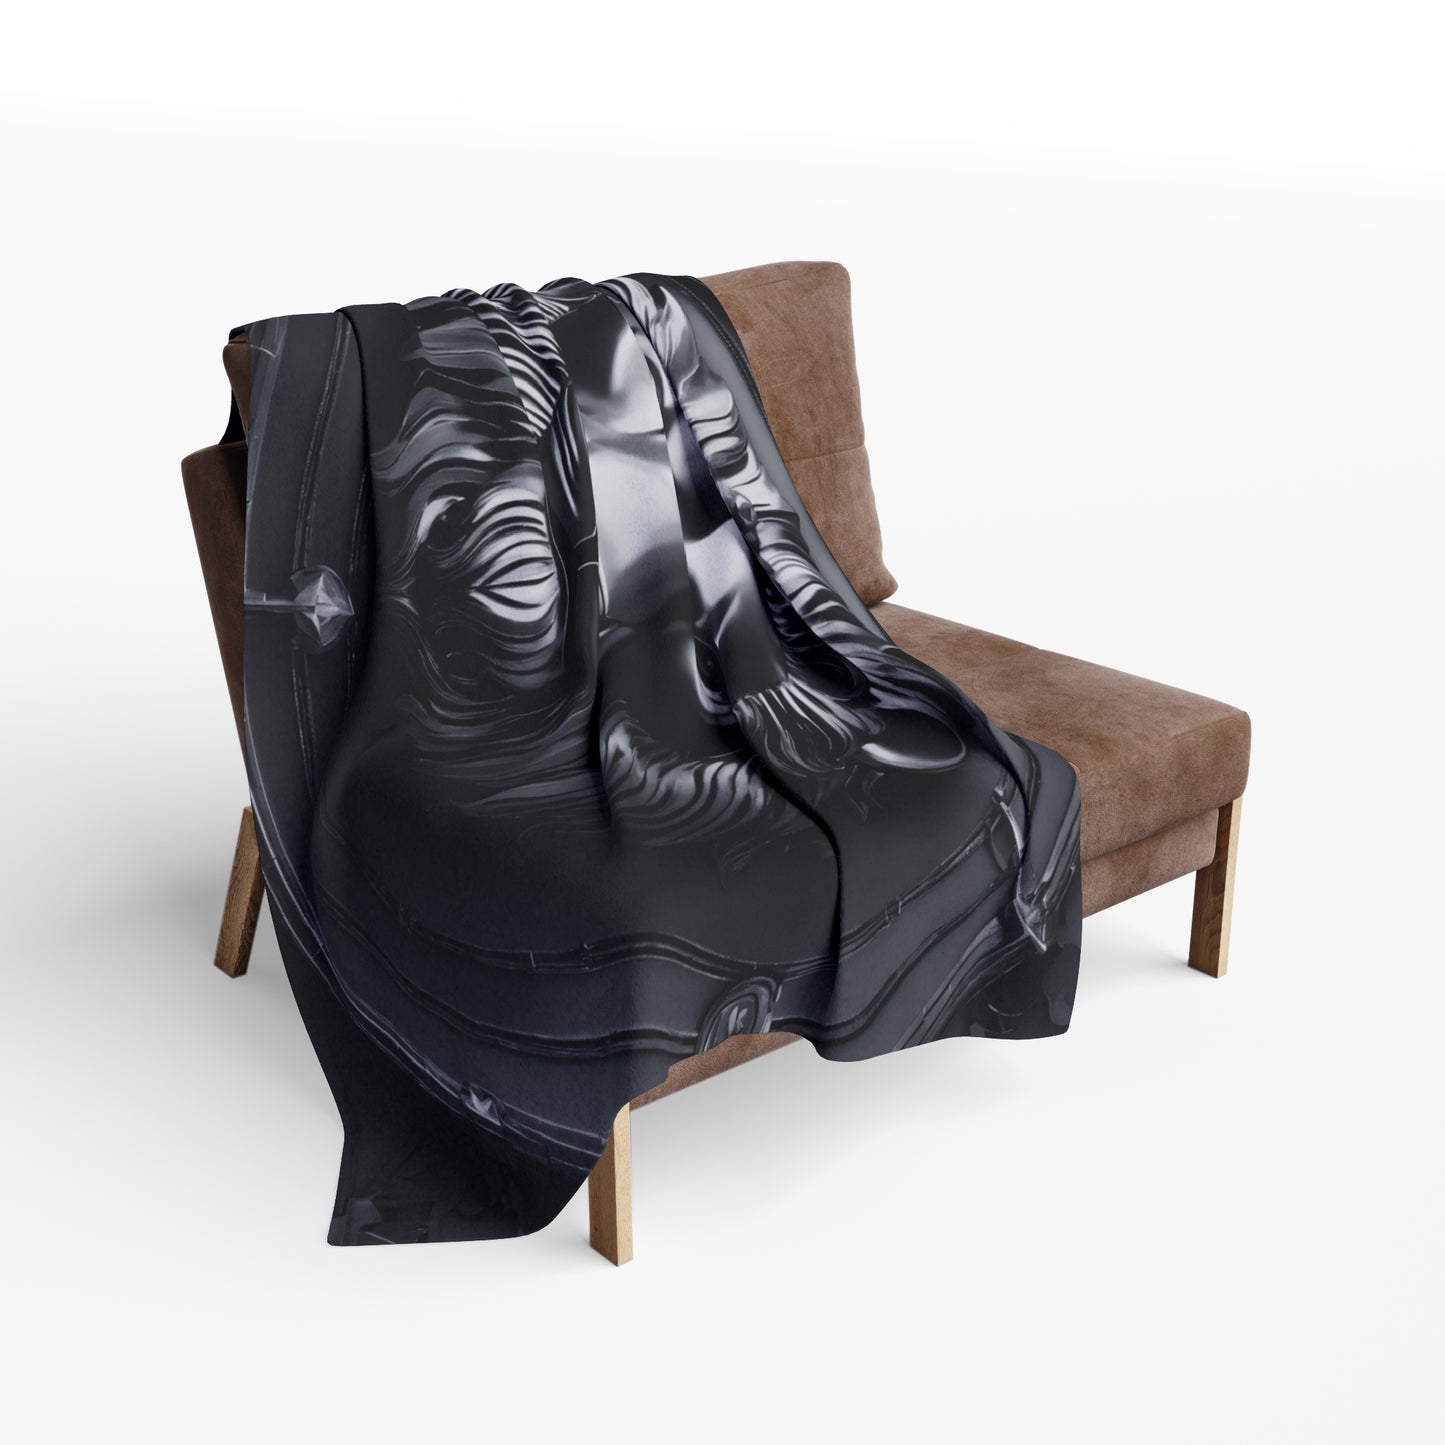 Black Lion Sculpture Design Fleece Throw Blanket